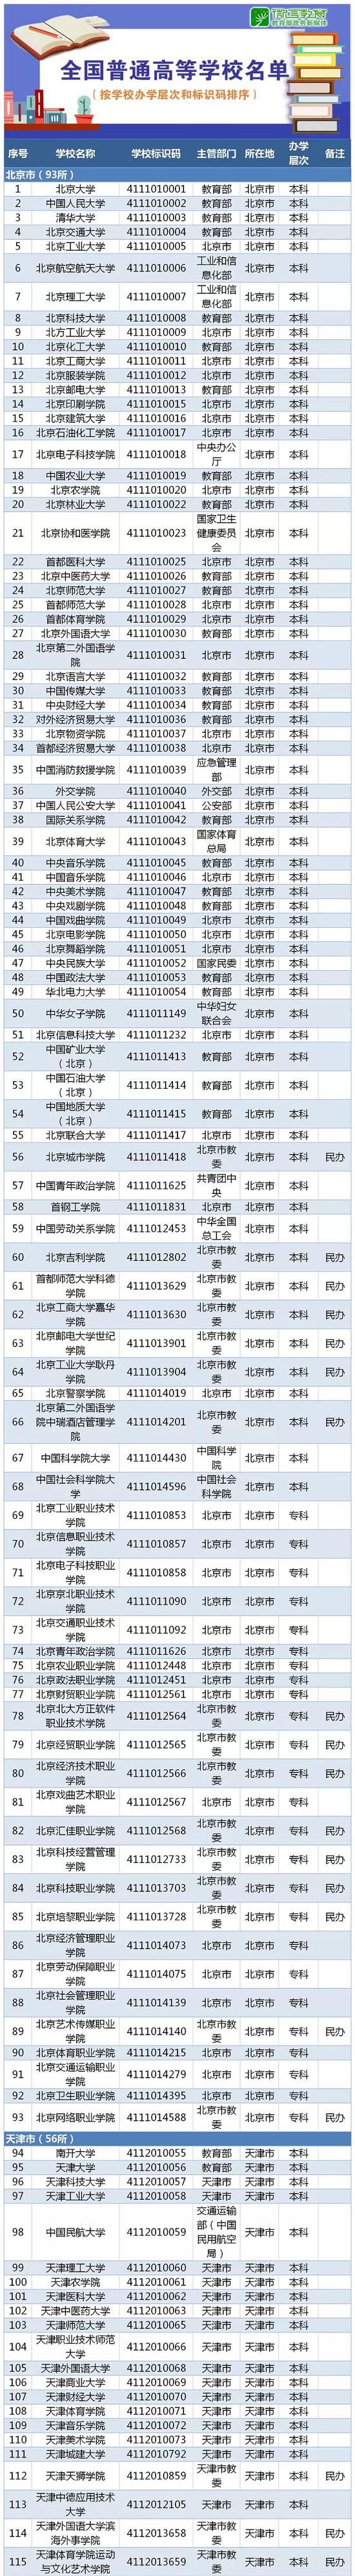 最新！教育部发布2019年全国高等学校名单2956所 江苏高等院校数量最多